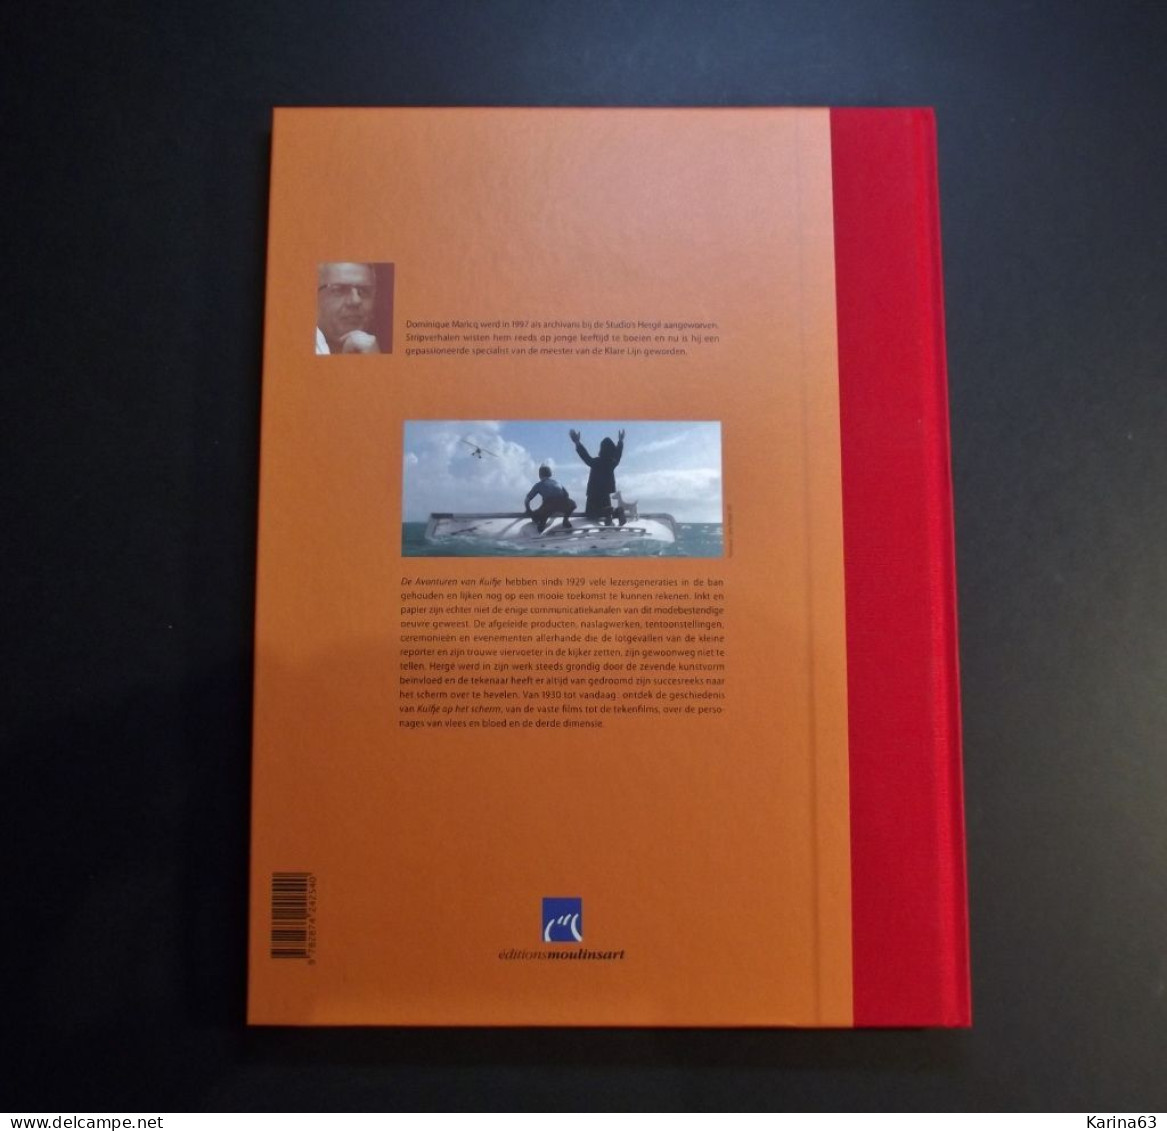 TinTin - Kuifje op het scherm Beperkte editie  Édition limitée (5000) velletje met 10 zegels ( 2011 ) in mint condition